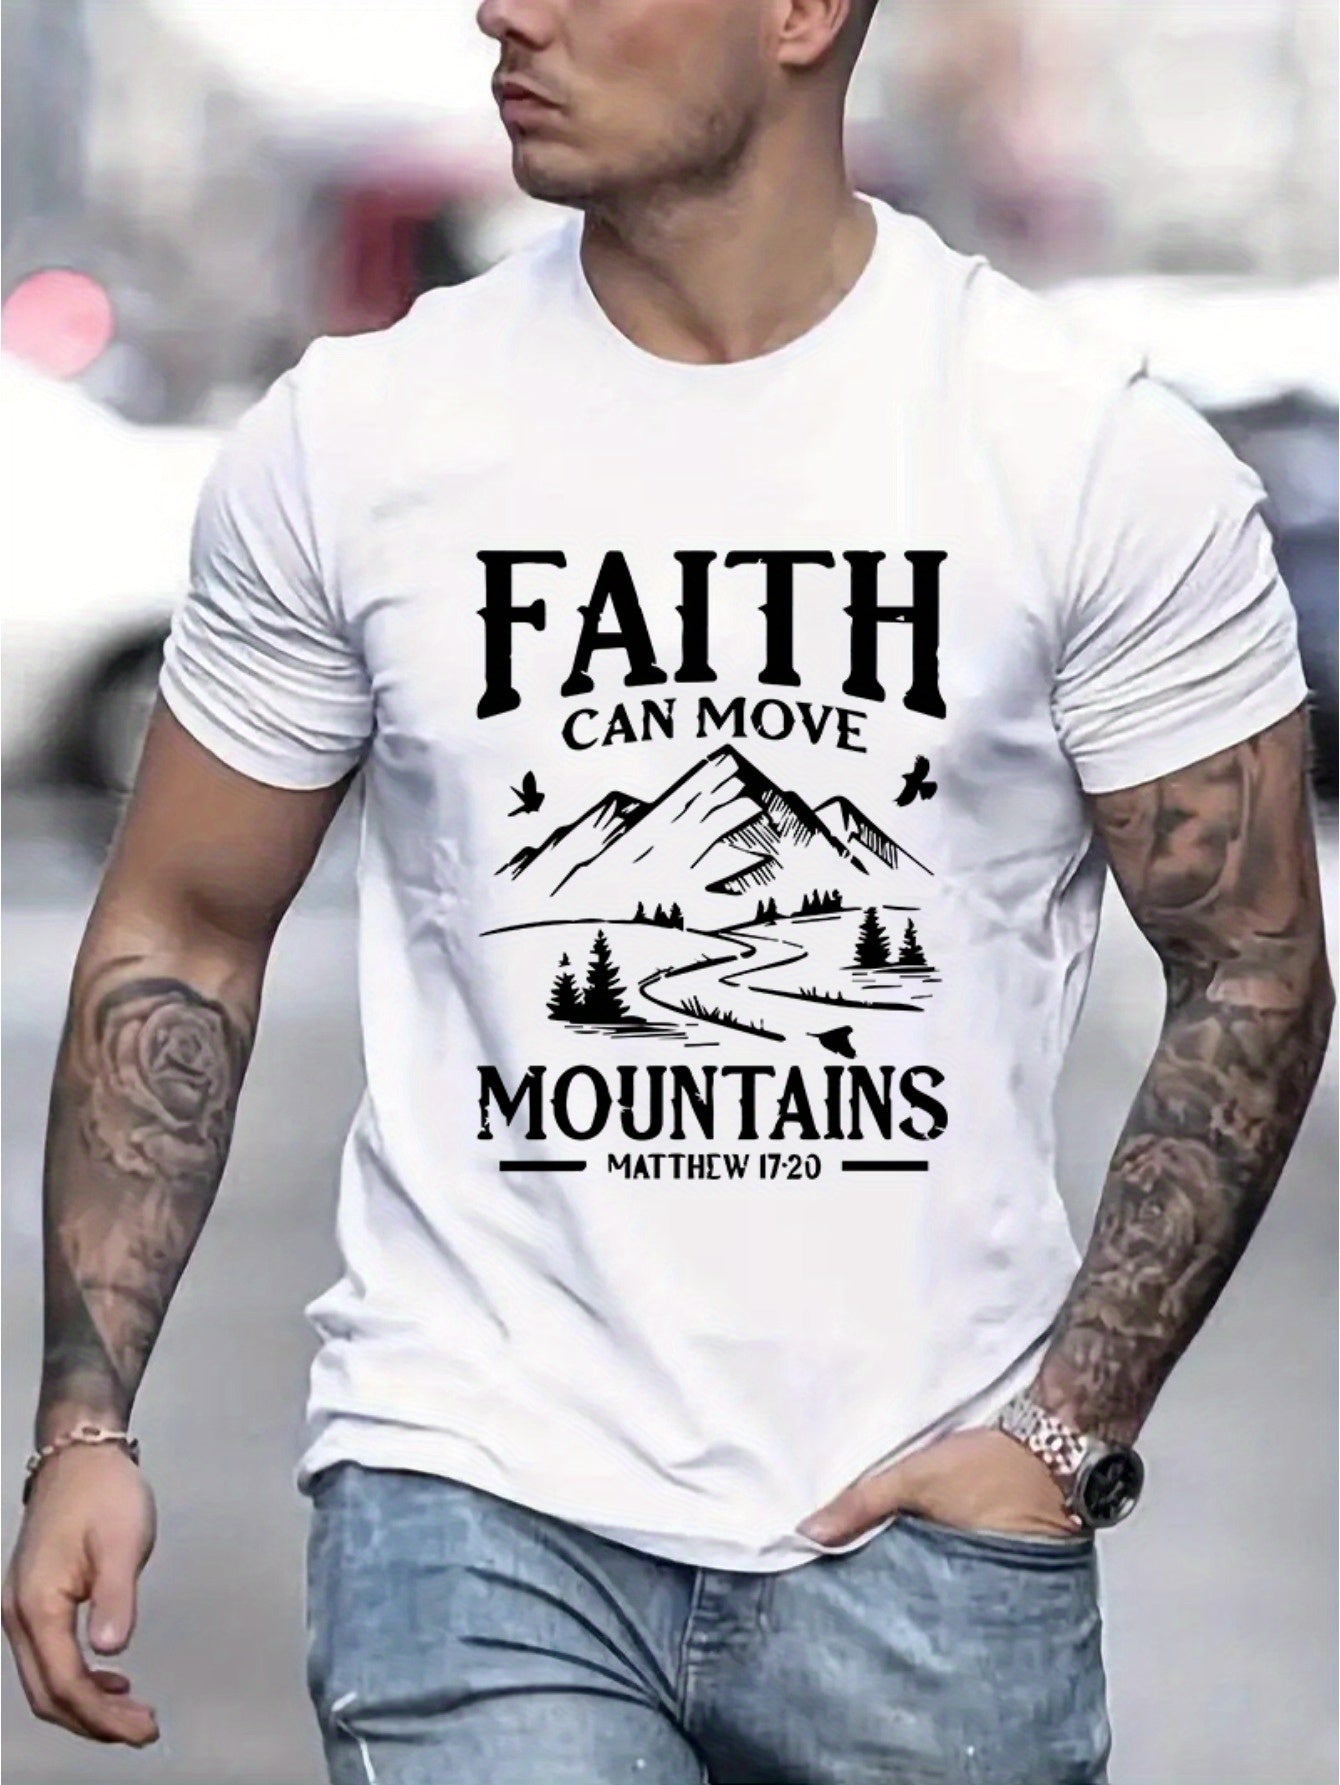 FAITH CAN MOVE MOUNTAINS MEN'S CHRISTIAN T-SHIRT claimedbygoddesigns